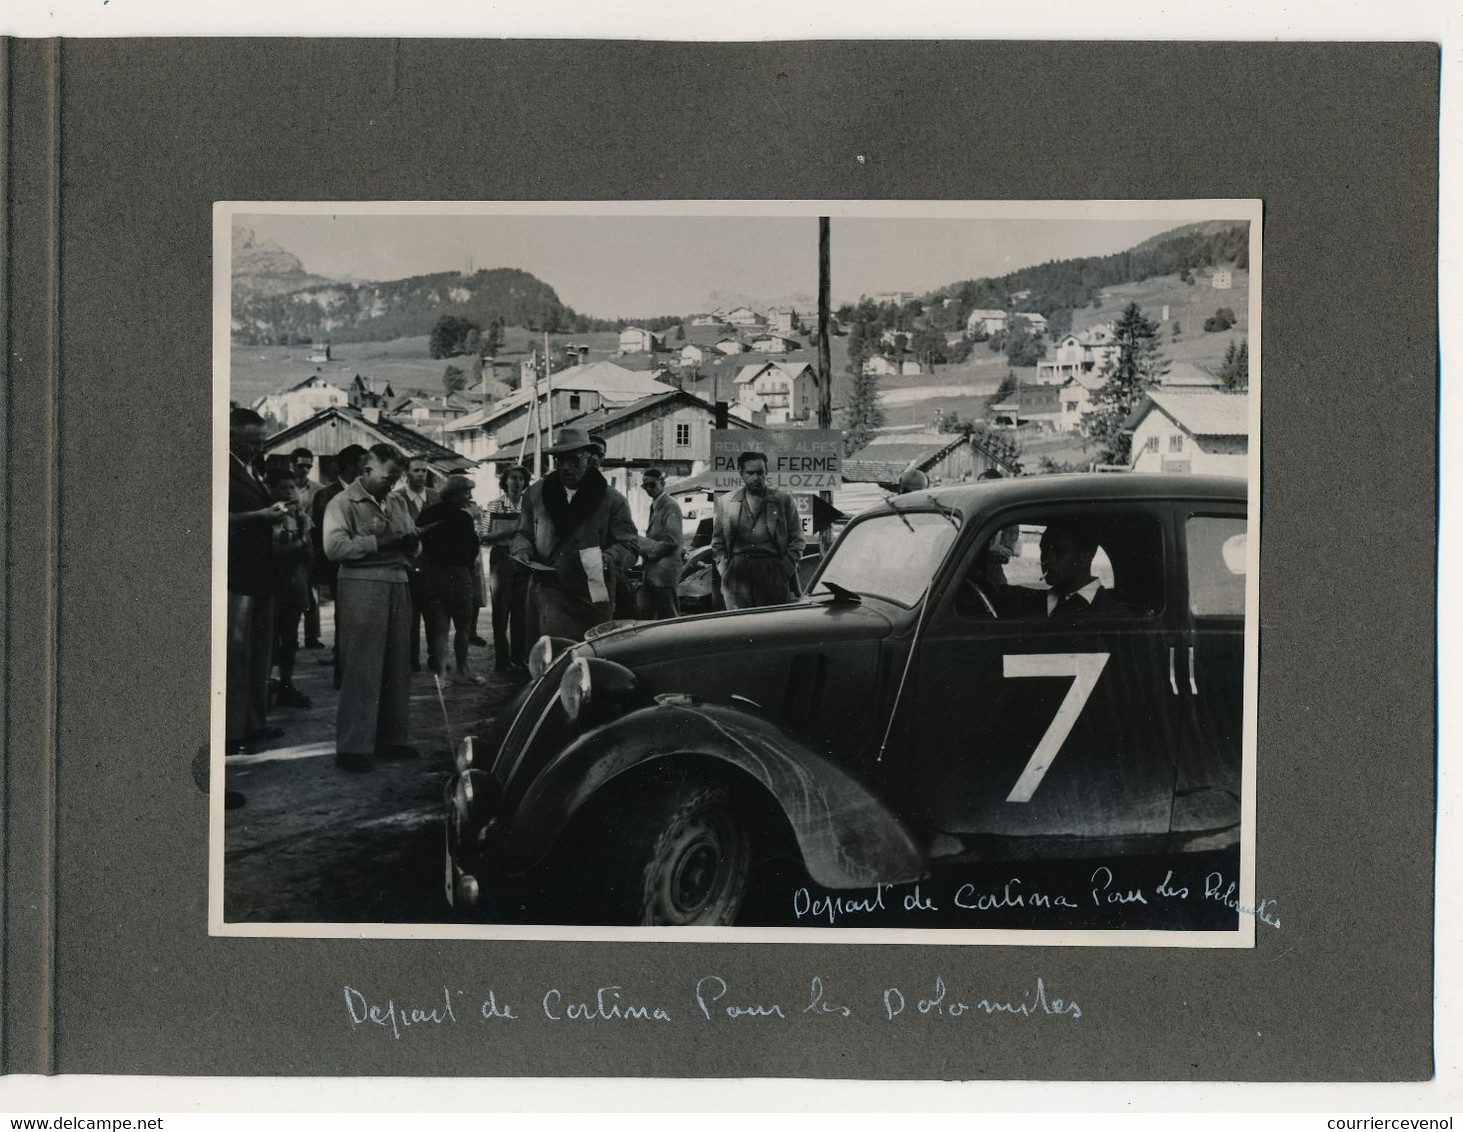 12eme Rallye Des Alpes 1949 - Equipe SEBAN DESCOMS - Départ De Cortina D'Ampezzo Pour Les Dolomites - SIMCA 8 COUPÉ 1949 - Automobile